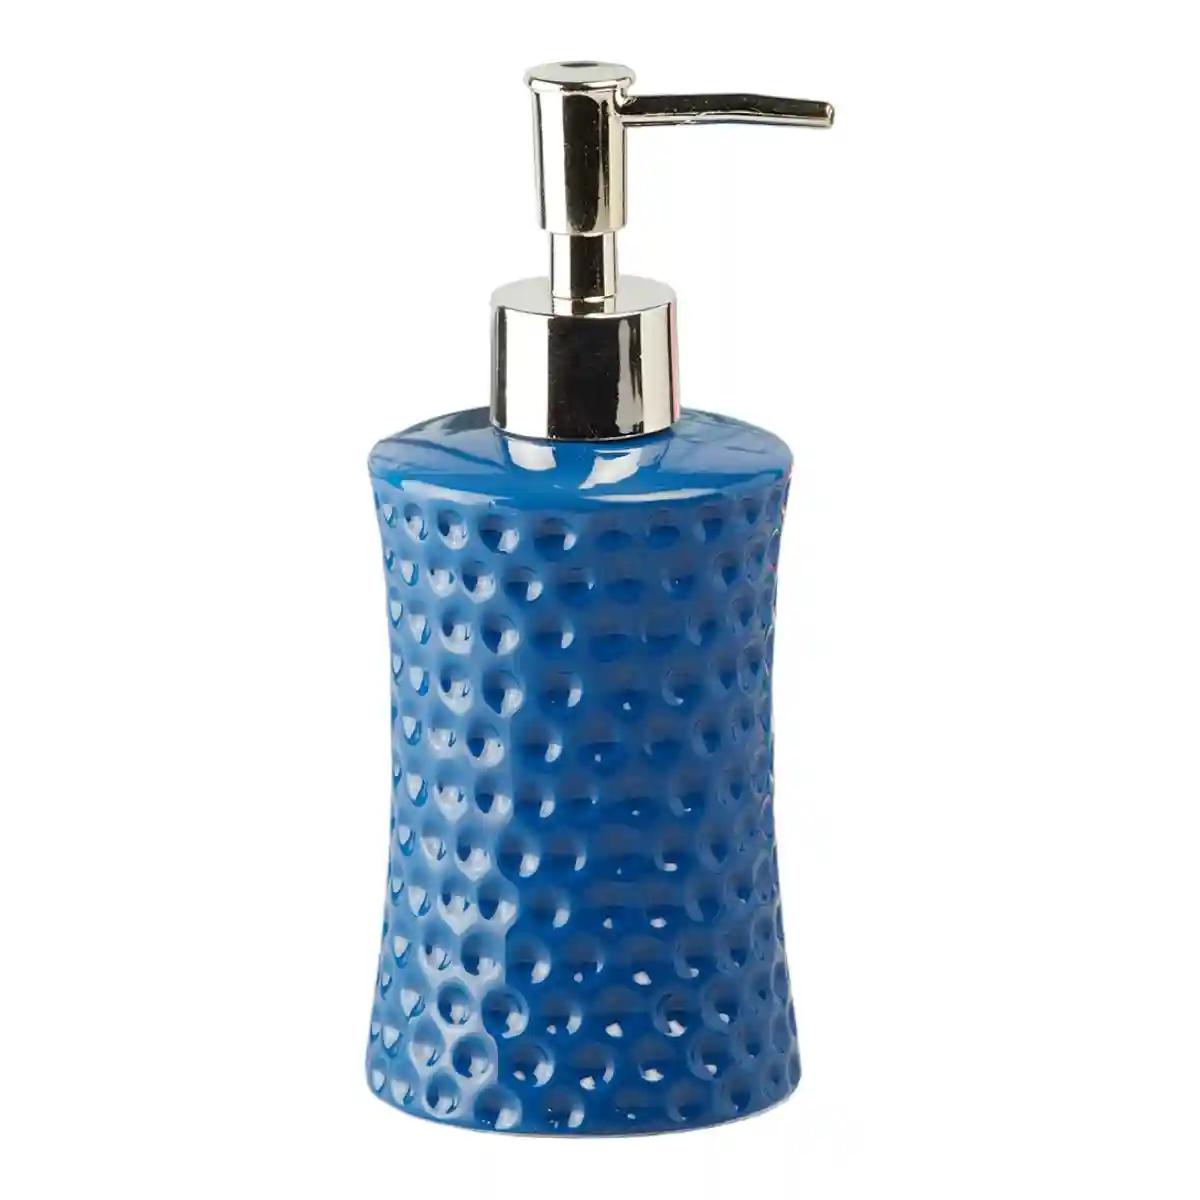 Kookee Ceramic Soap Dispenser for Bathroom handwash, refillable pump bottle for Kitchen hand wash basin, Set of 2 - Blue (8038)